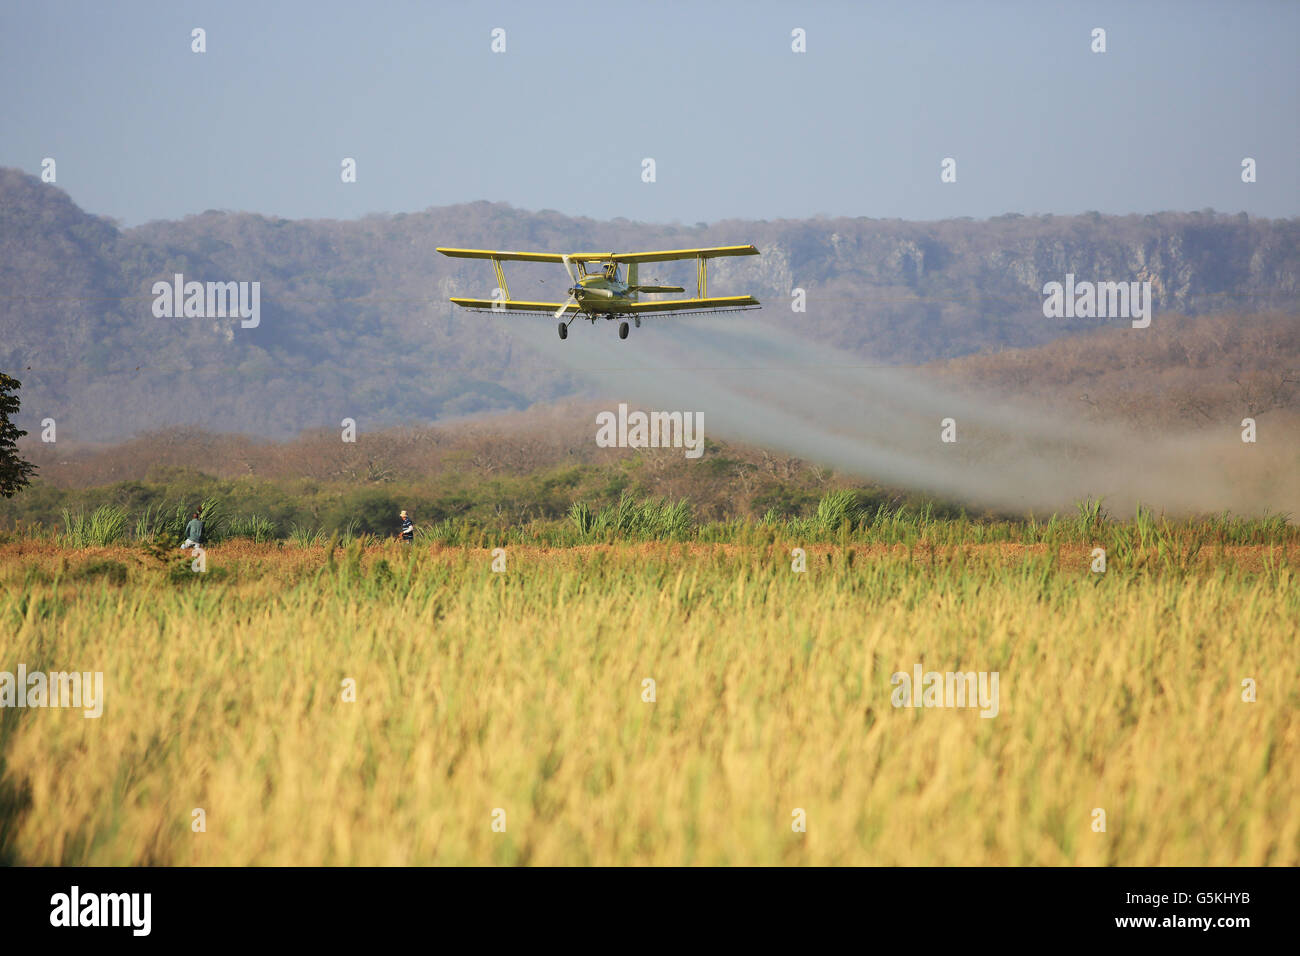 Flugzeug Sprühen von Pestiziden über eine Reis-Plantage in der Nähe von Nationalpark Palo Verde, Guanacaste, Costa Rica. Stockfoto